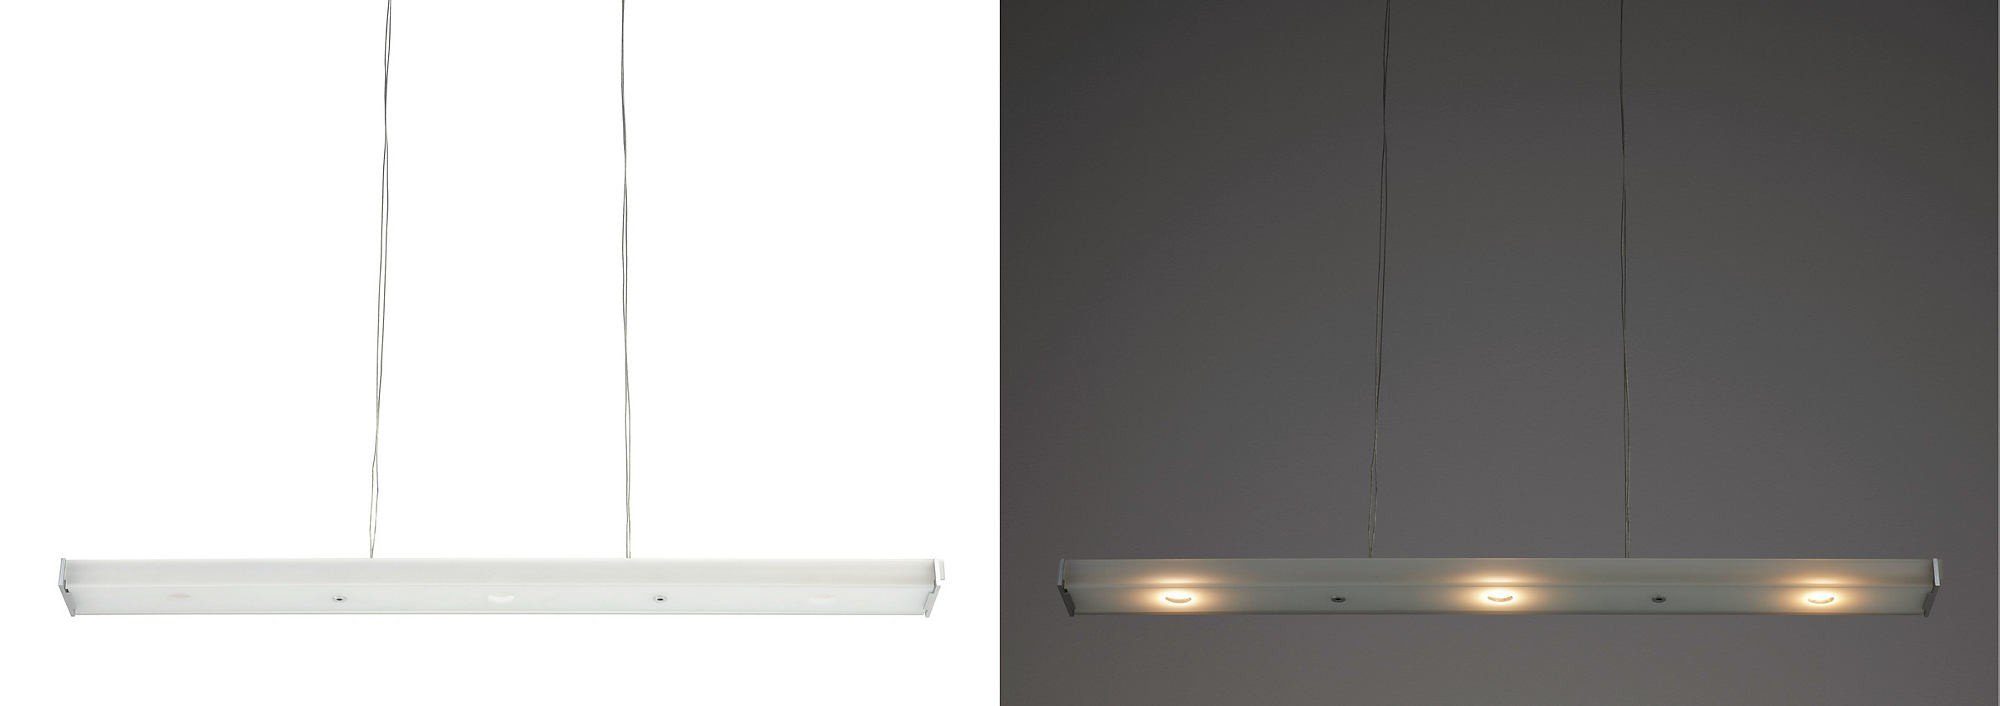 Dimmbar, Ledino Philips Lichtfarbe Aufbaustrahler Pendelleuchte wählbar LED Alu LED Glas Qualitaetsware24 LED